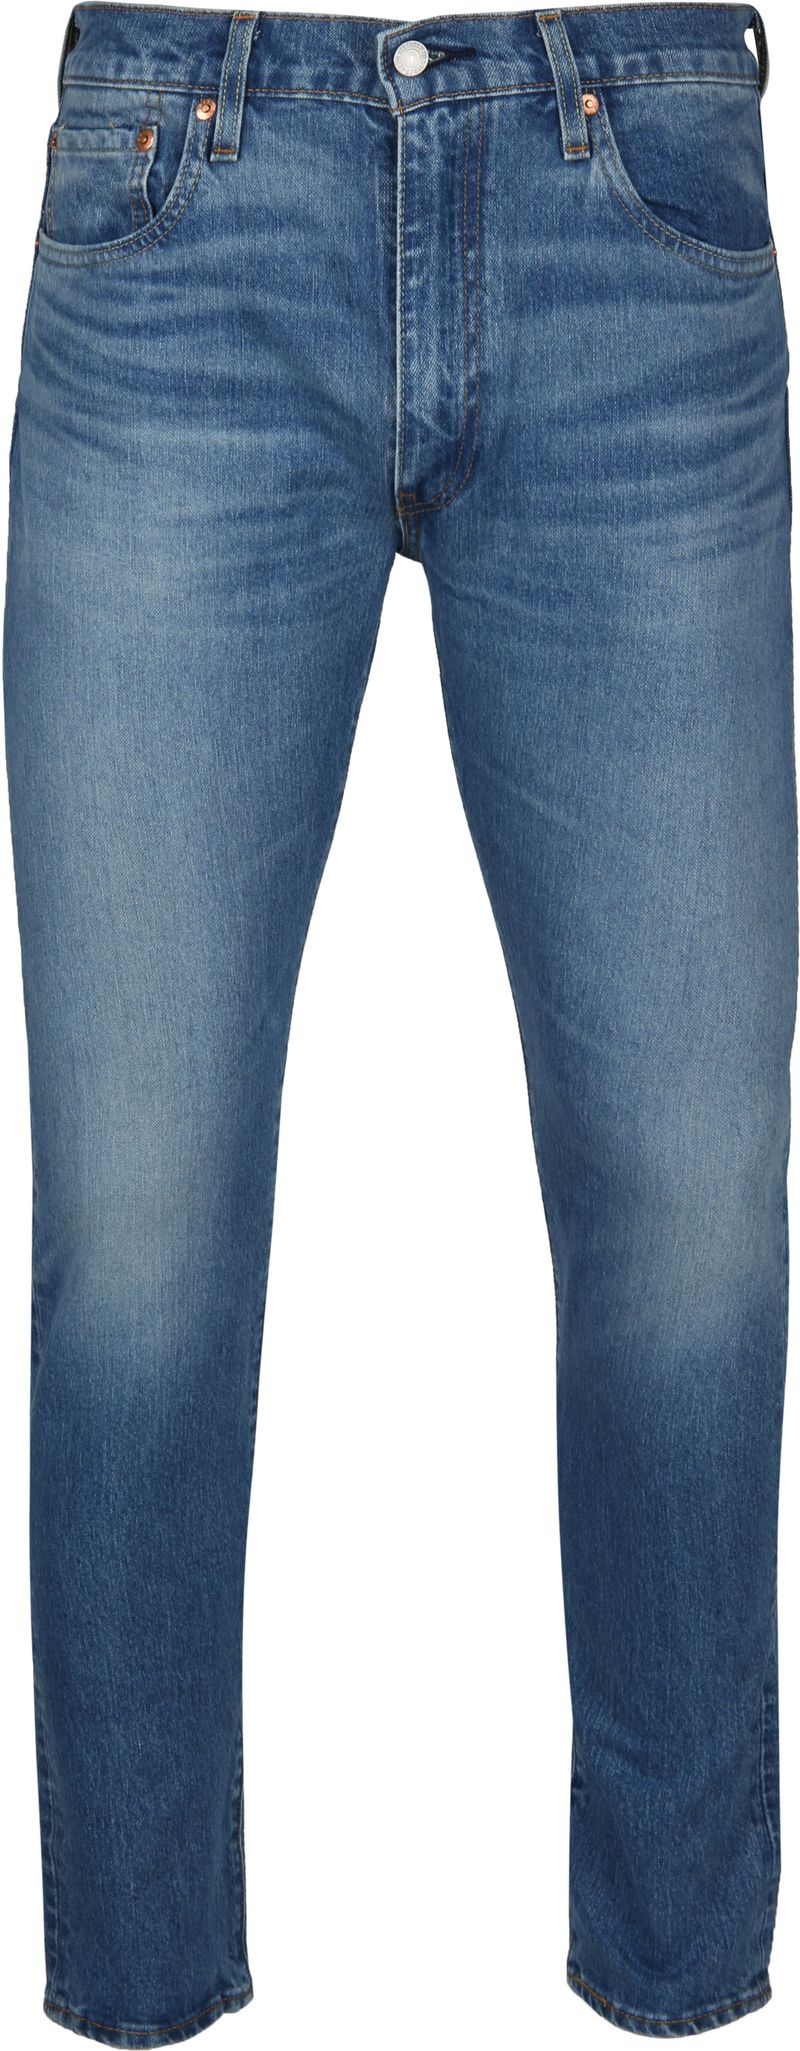 levi’s 512 jeans slim taper fit blauw